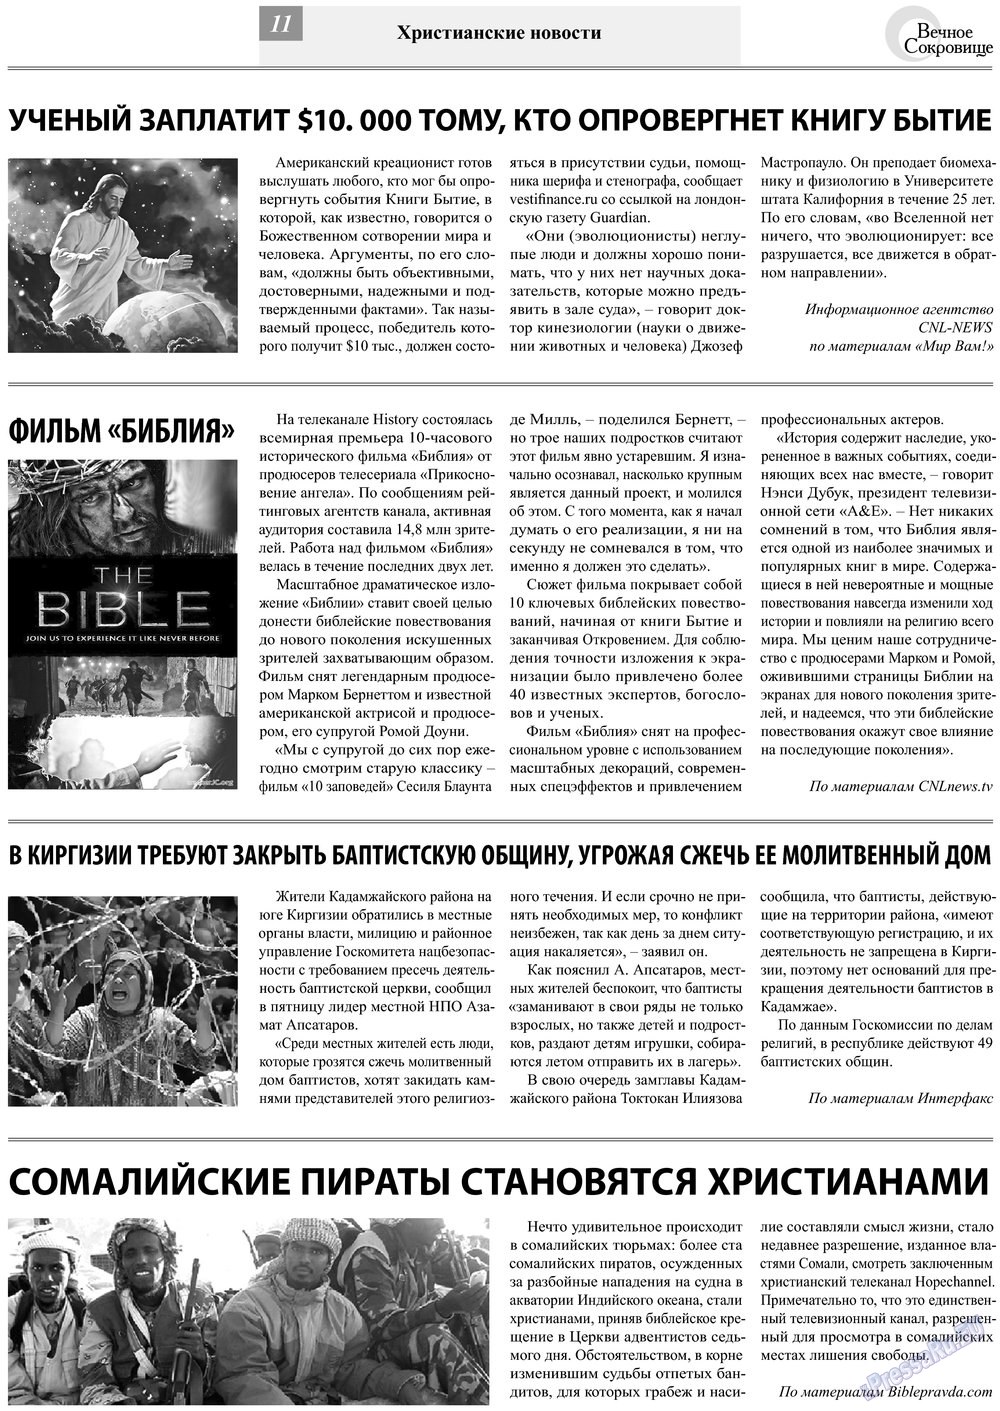 Вечное сокровище, газета. 2013 №3 стр.11